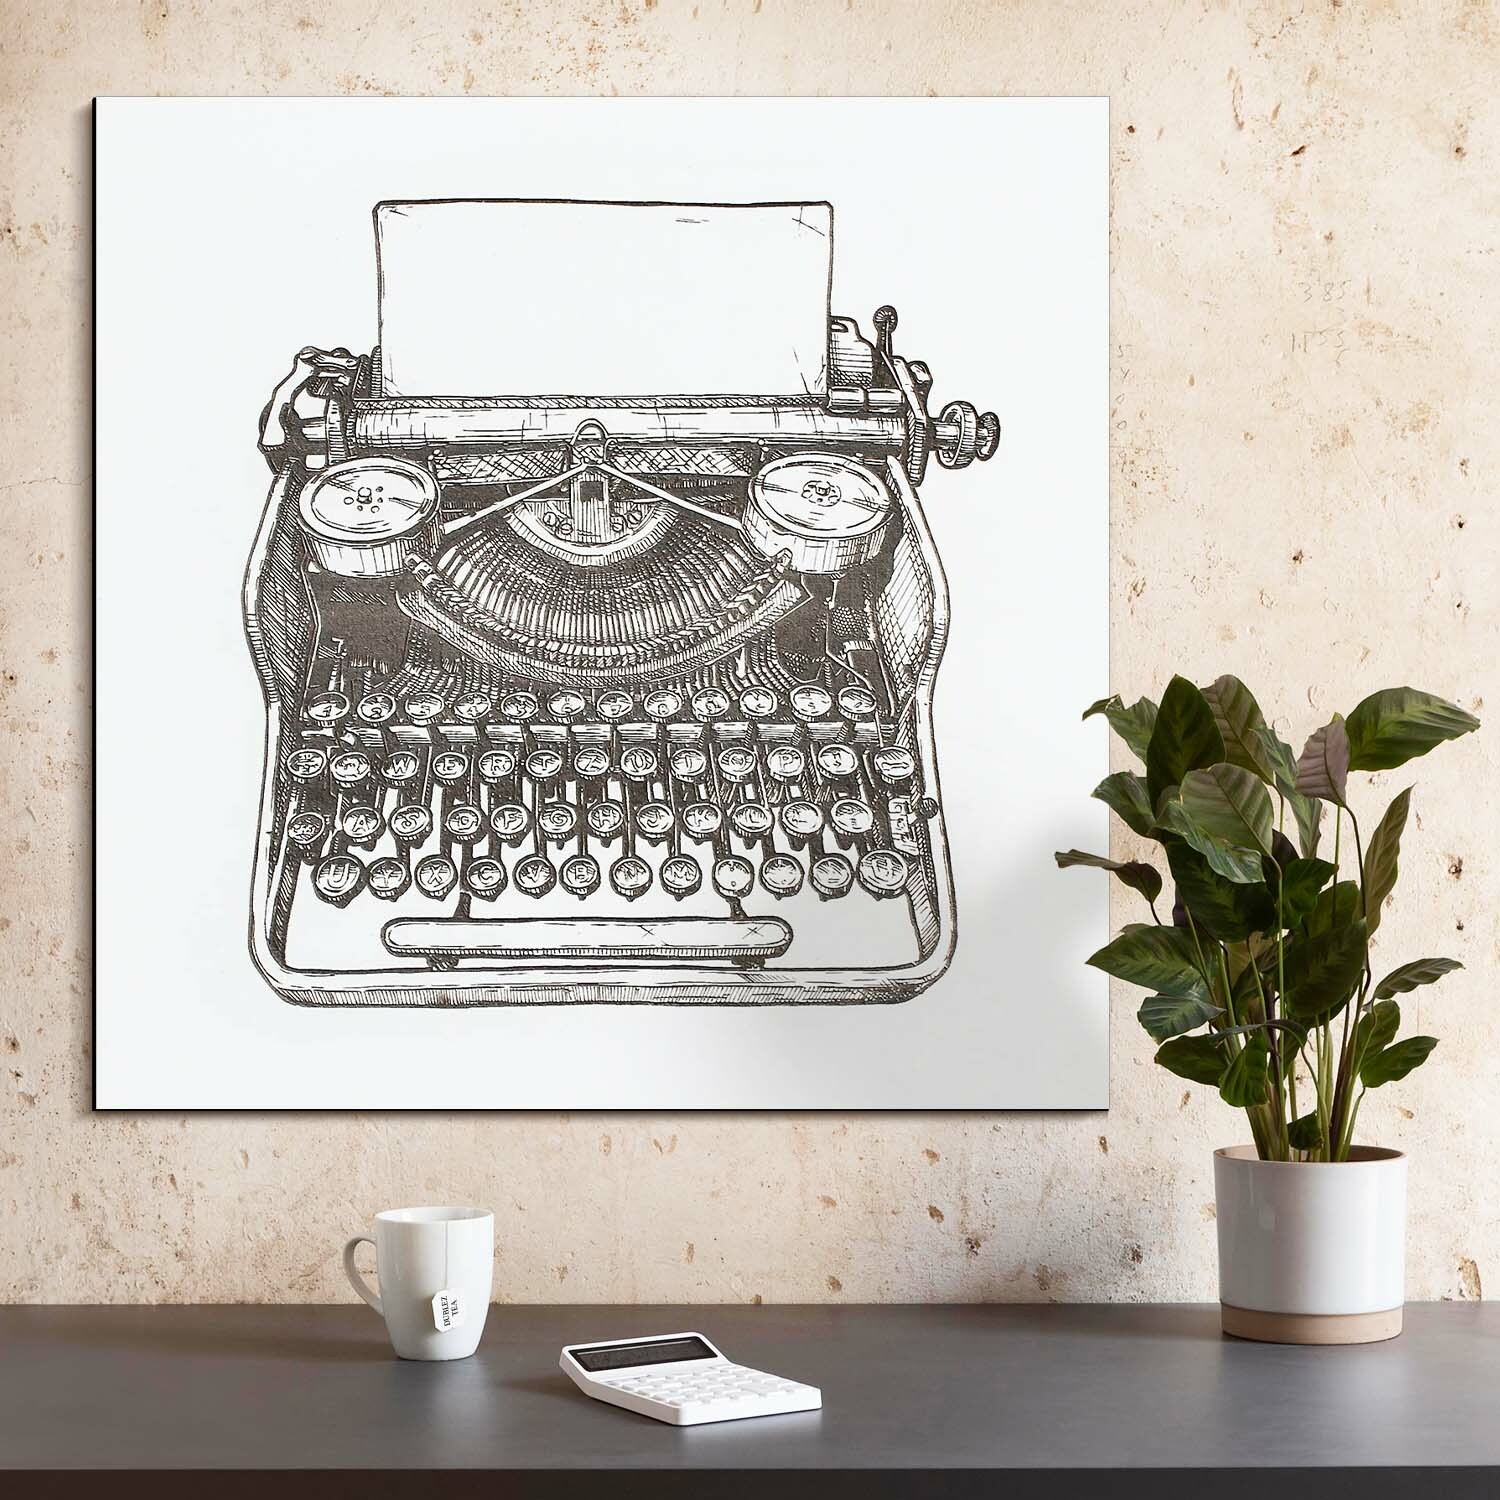 Dřevěný obraz do kanceláře - Retro psací stroj